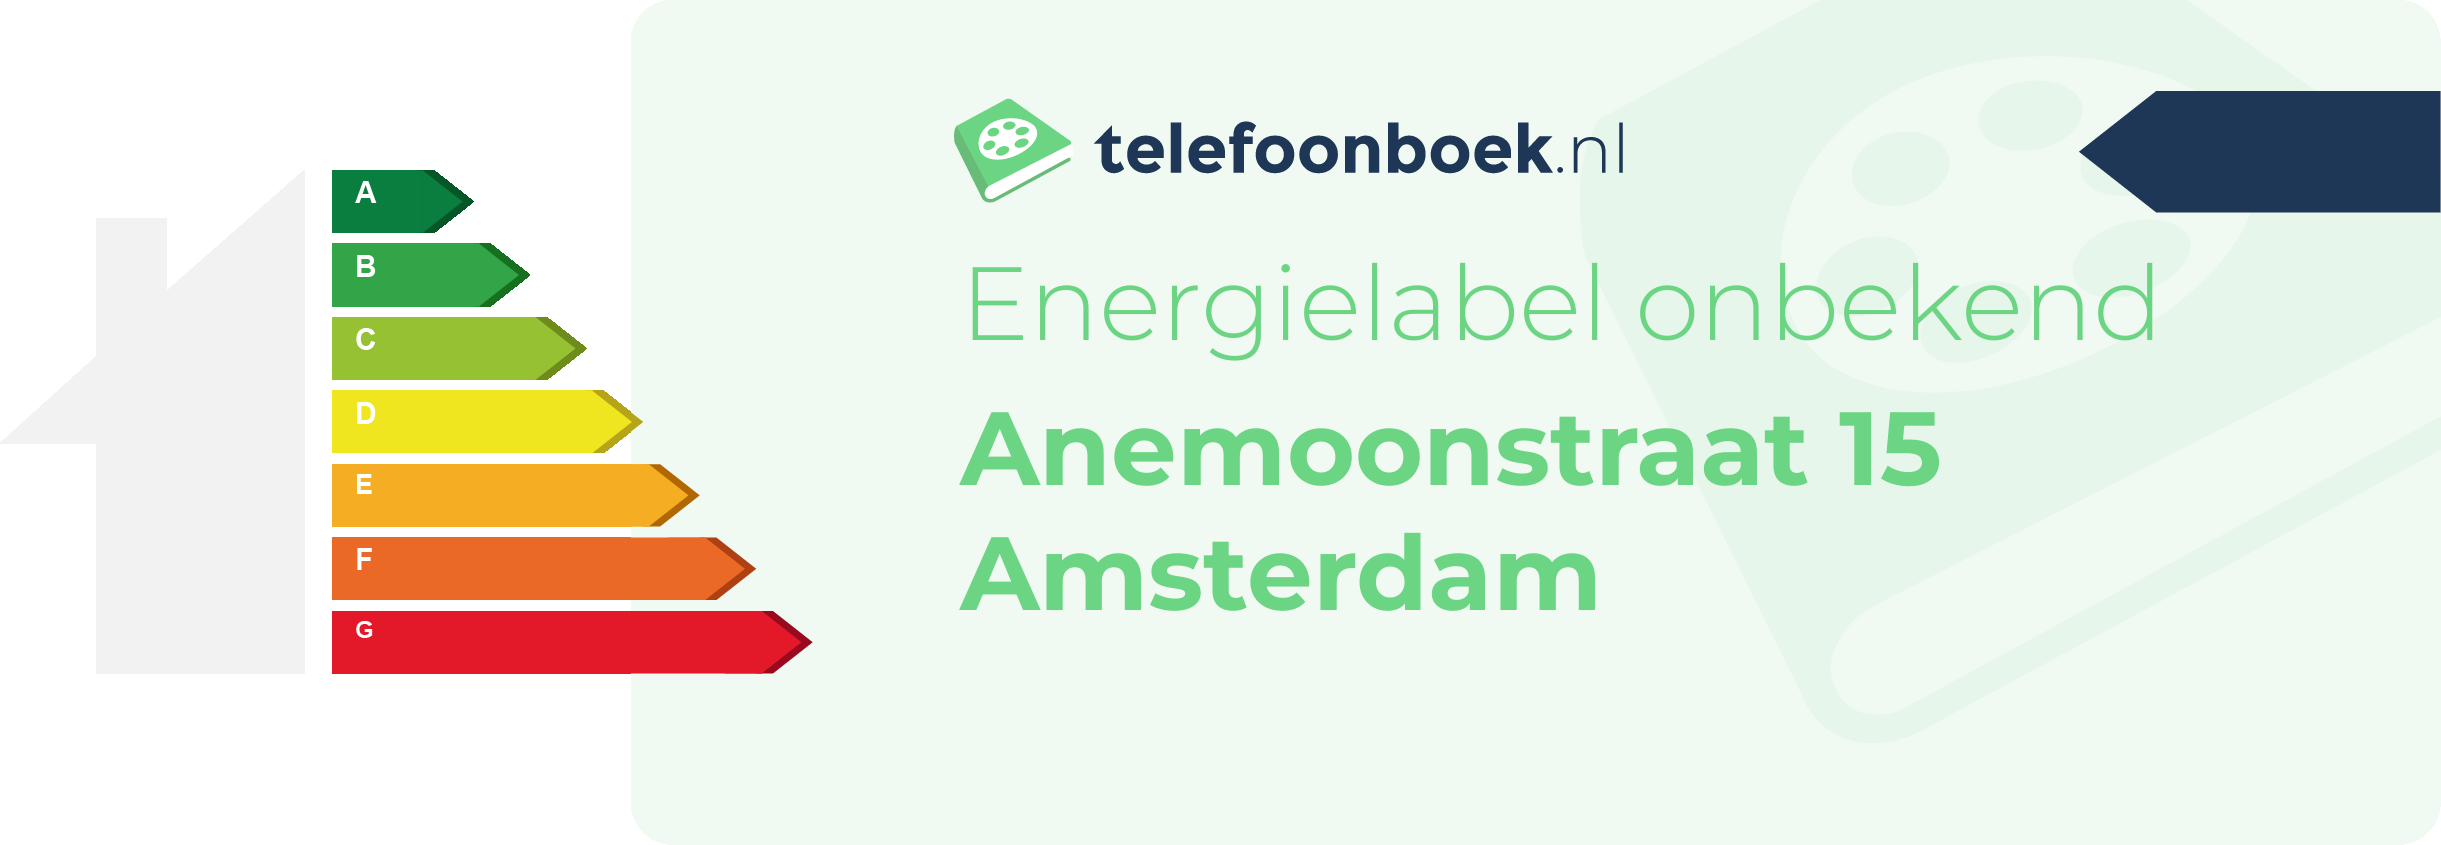 Energielabel Anemoonstraat 15 Amsterdam